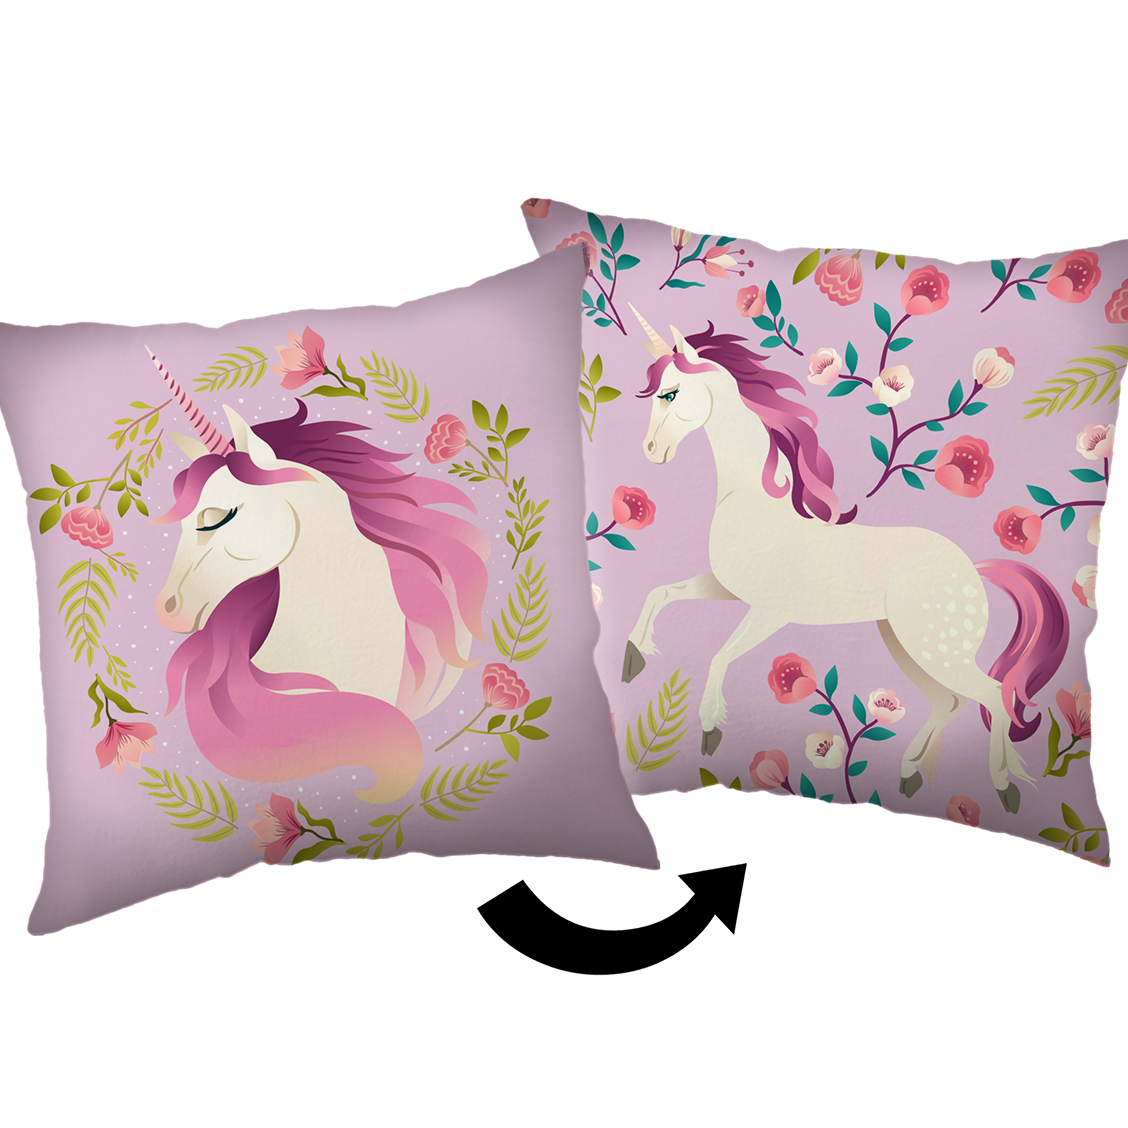 Unicorn Decorative cushion Roses - 40 x 40 cm - Polyester